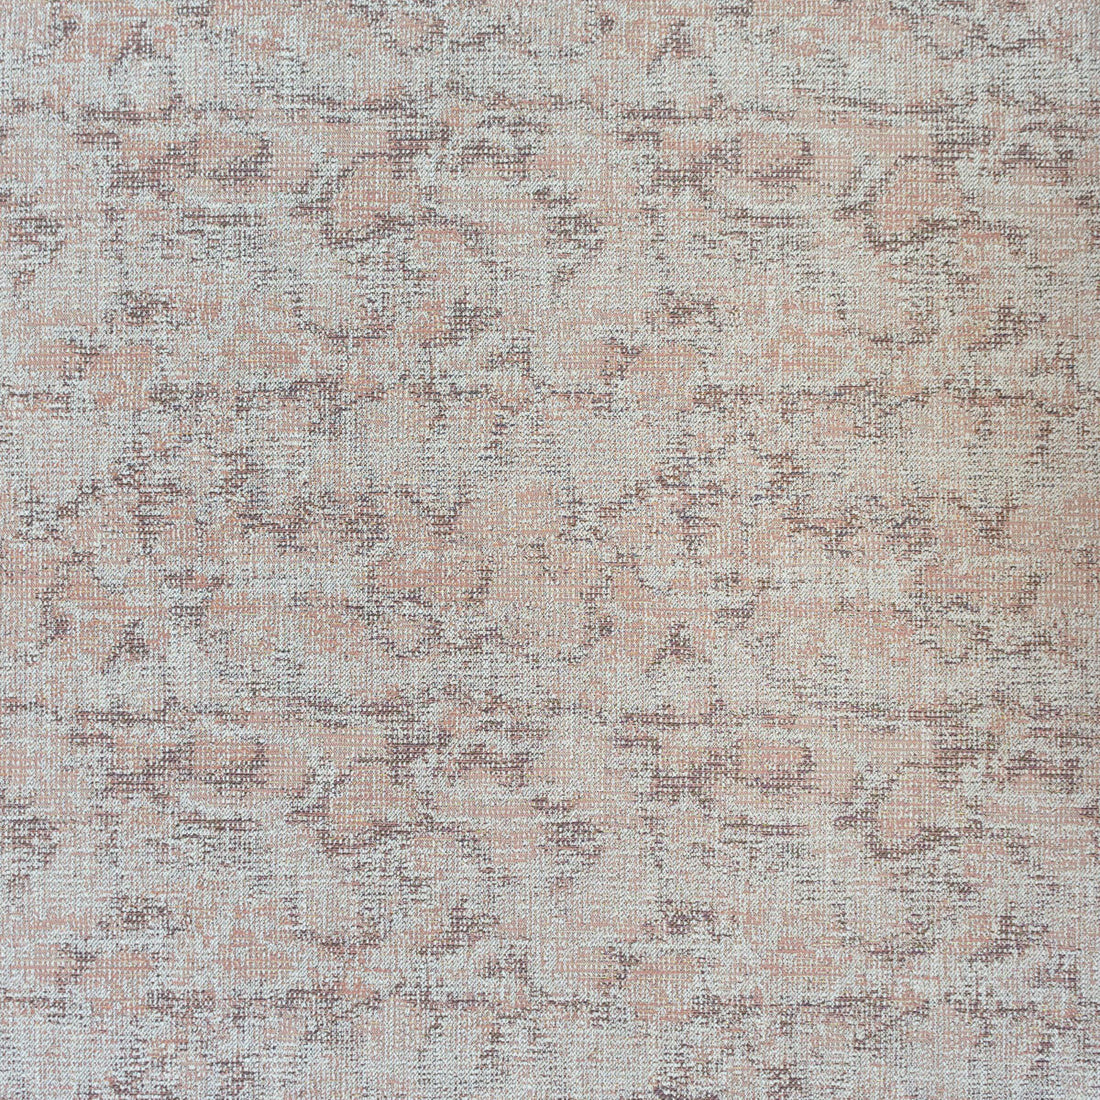 Carbonero fabric in rosa color - pattern LCT1049.004.0 - by Gaston y Daniela in the Lorenzo Castillo VI collection